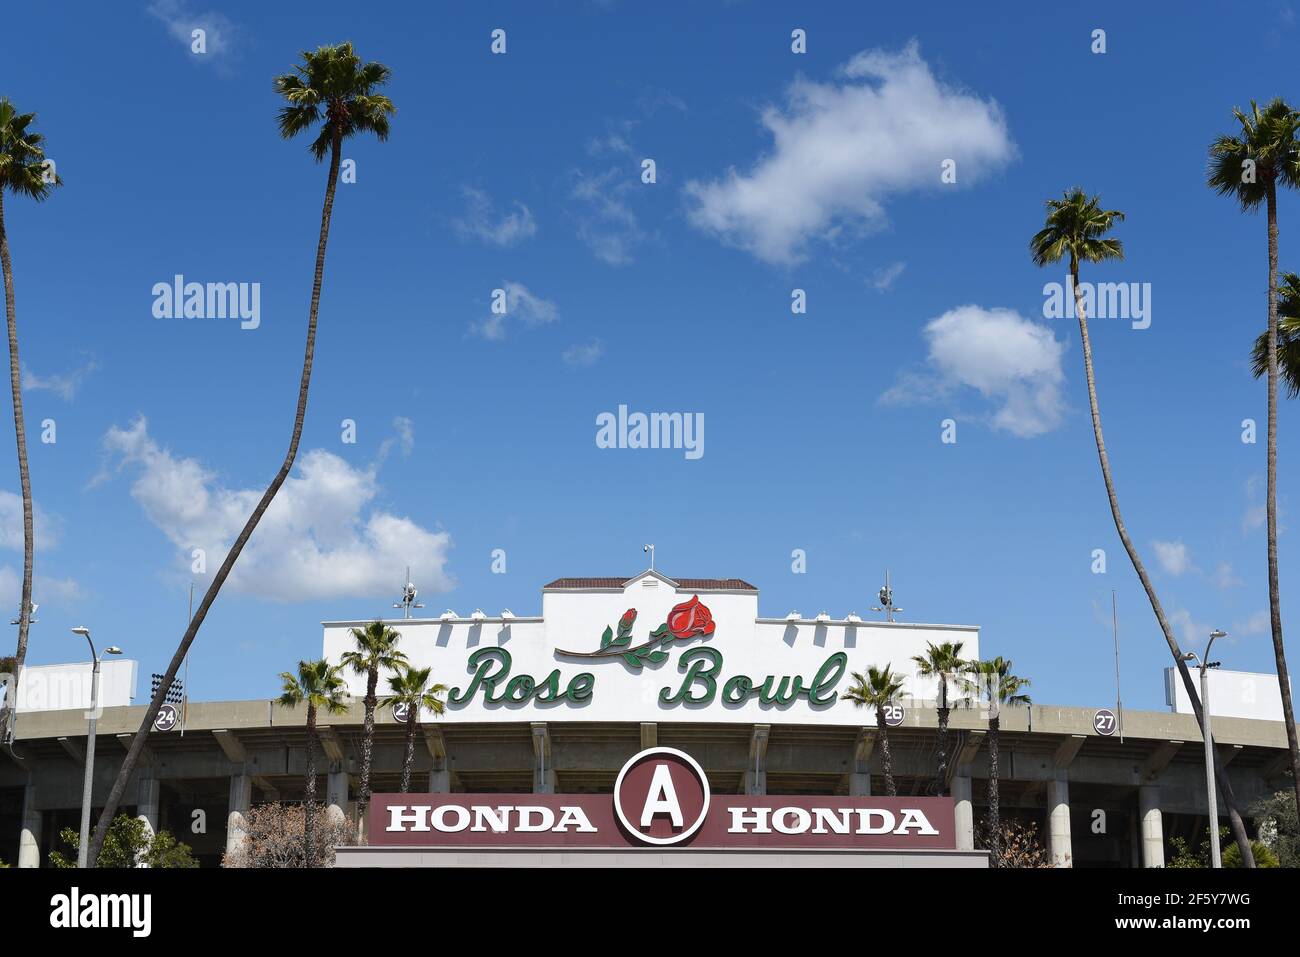 PASADENA, KALIFORNIEN - 26 MAR 2021: Nahaufnahme des Rose Bowl-Schildes, eingerahmt von Palmen und blau bewölktem Himmel. Stockfoto